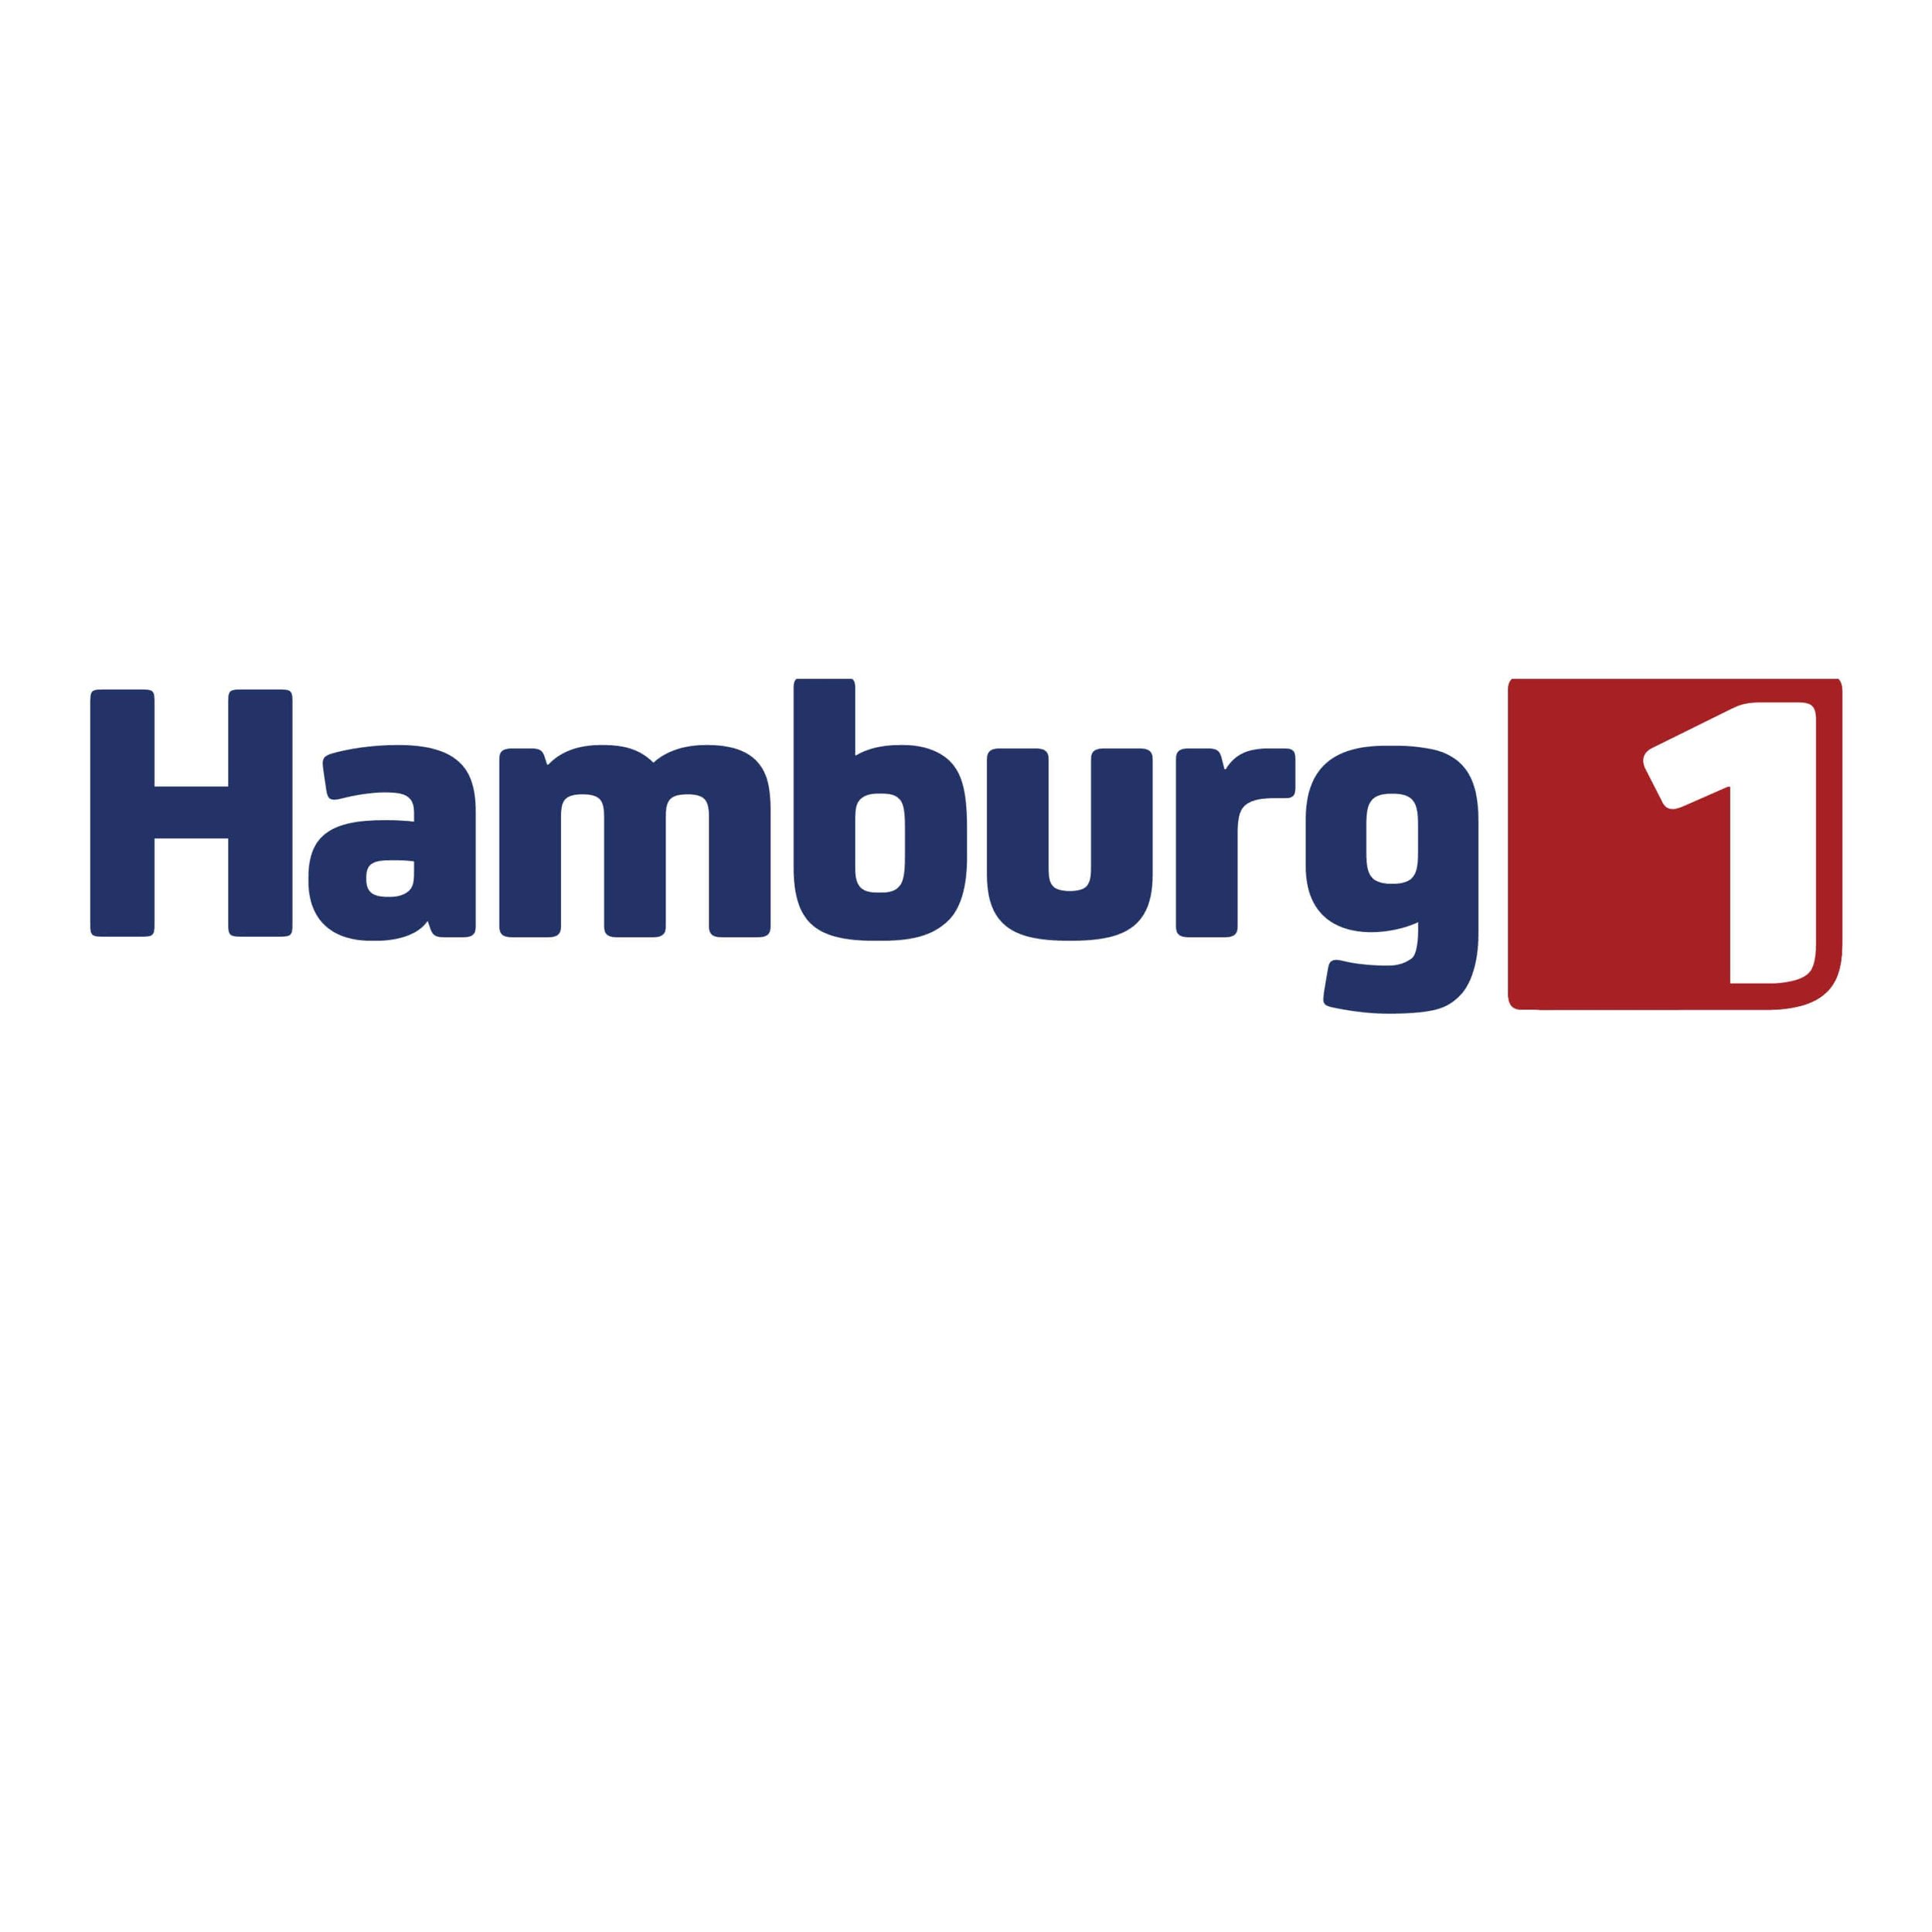 Hamburg 1 (Kopie) (Kopie) (Kopie)